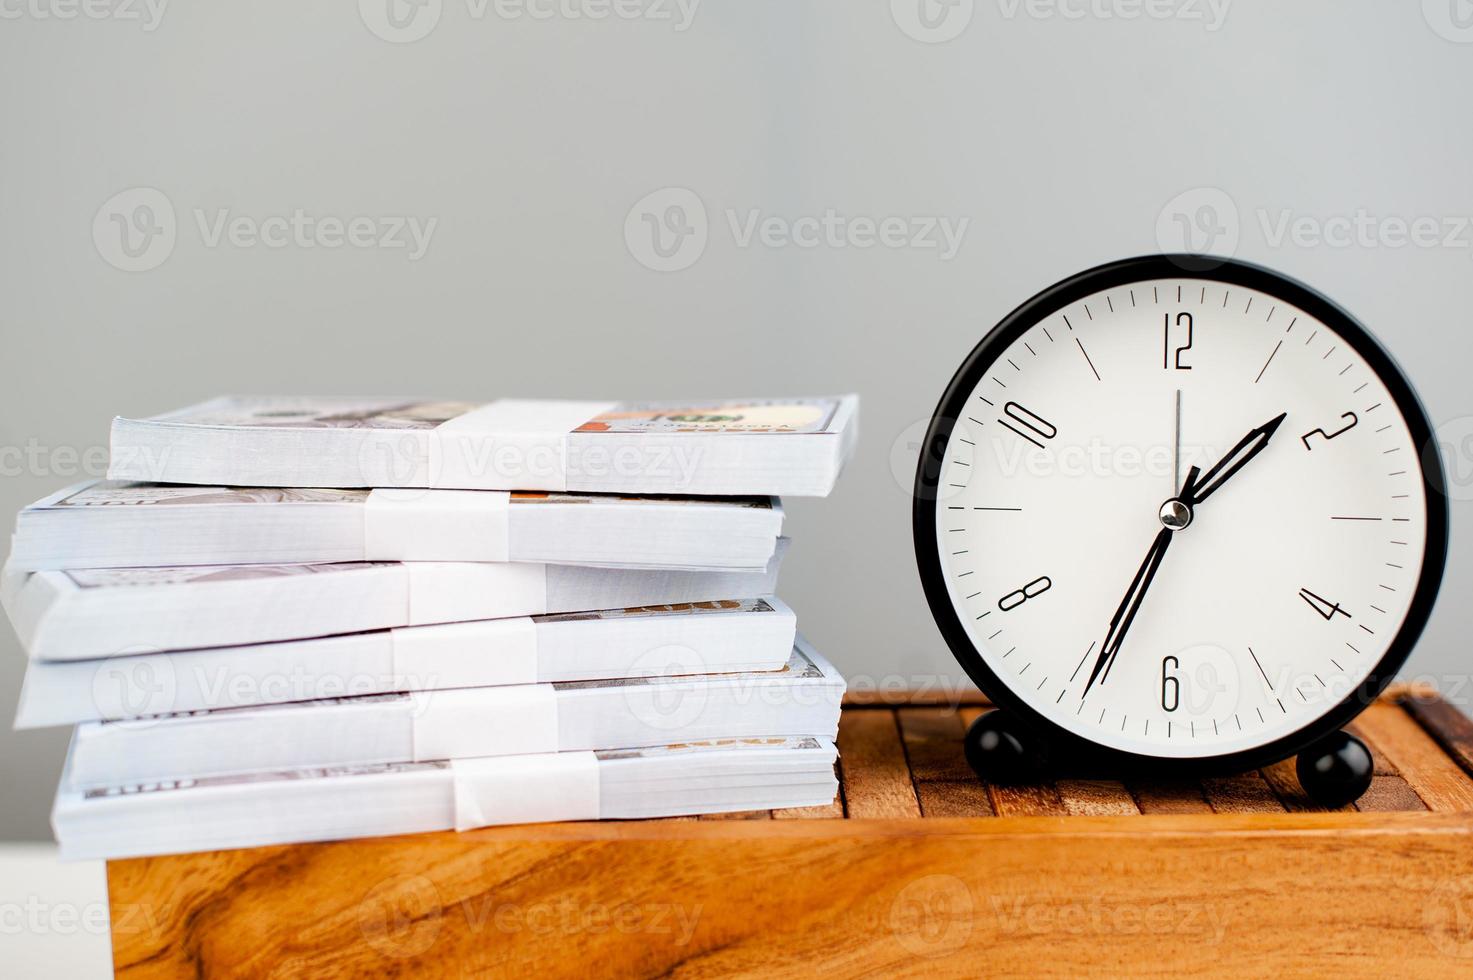 reloj de alarma blanco puesto en dólar de plata y concepto de finanzas simplificado en el tiempo foto